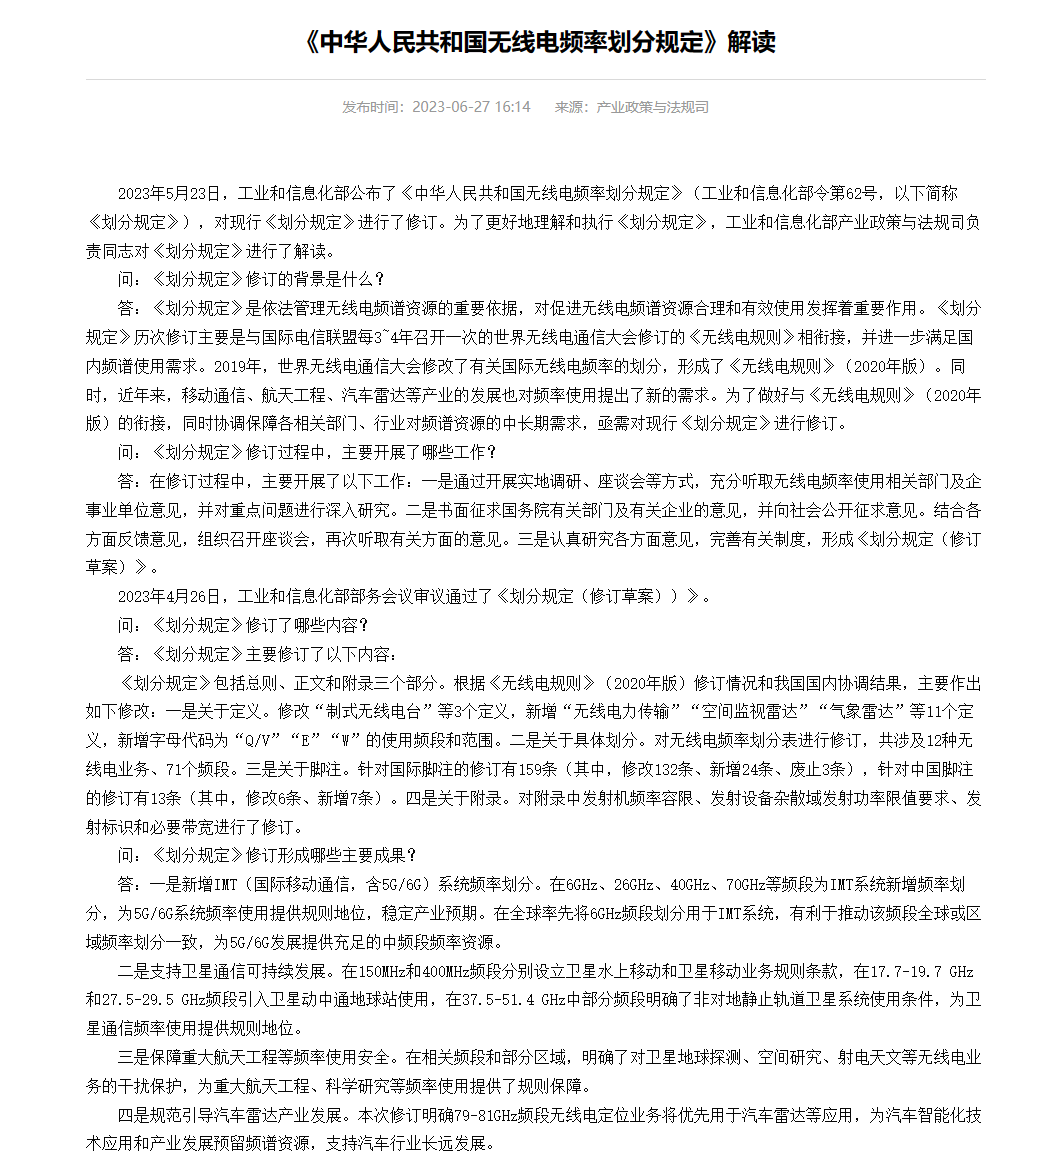 工信部发布新版《中华人民共和国无线电频率划分规定》，率先在全球将 6GHz 频段划分用于 5G / 6G 系统